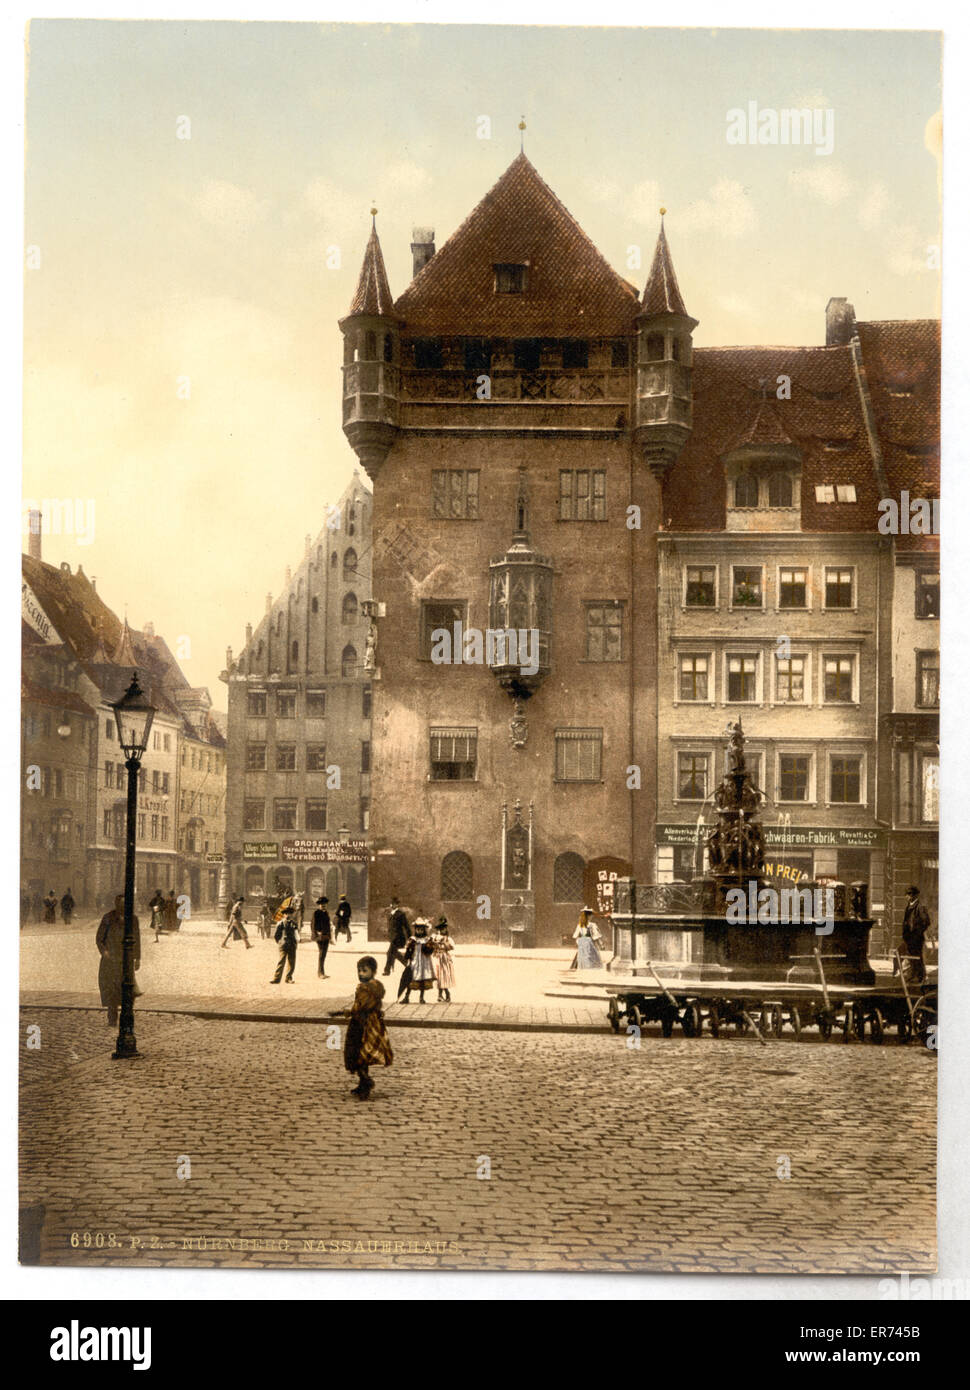 Nassauerhaus, Nuremberg, Bavaria, Germany Stock Photo